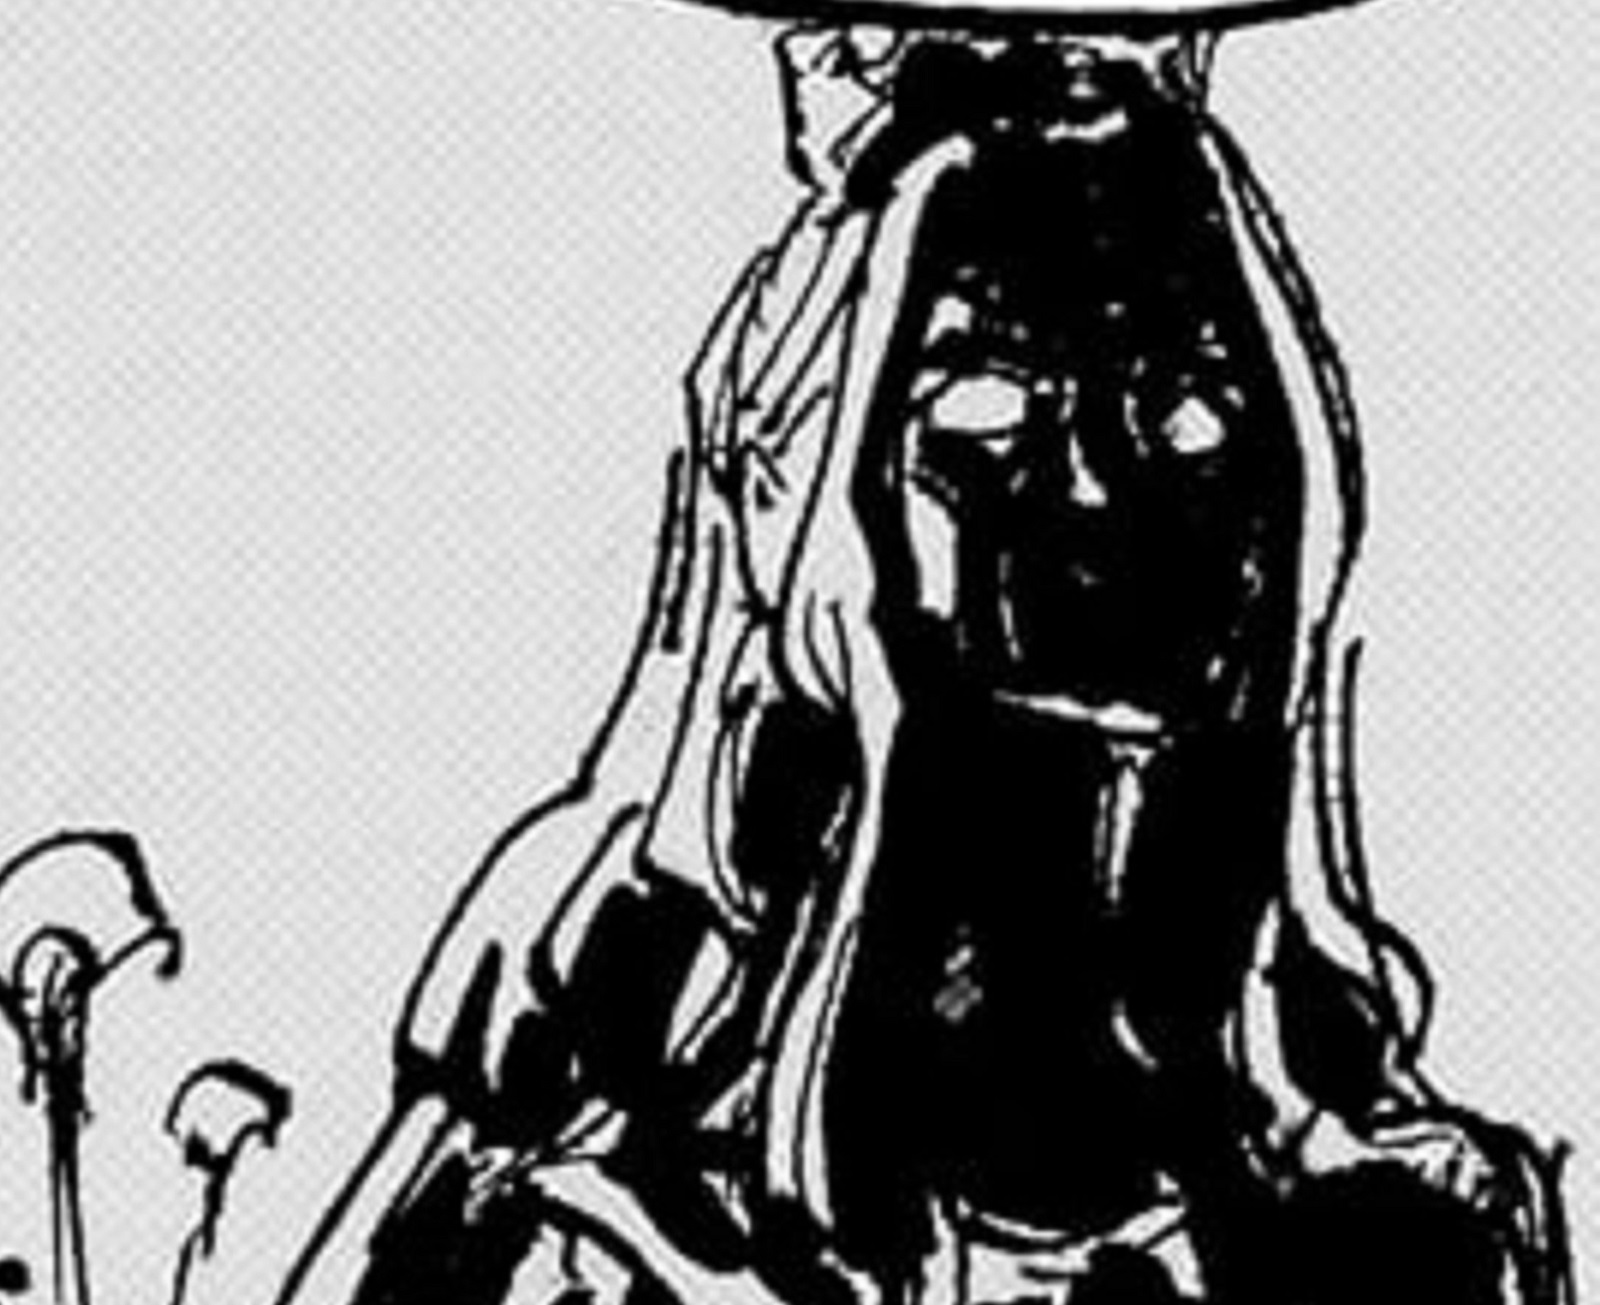 Kekuatan Buah Iblis Nefertari D Lili dalam One Piece - Teori dan Hubungannya dengan Poneglyph